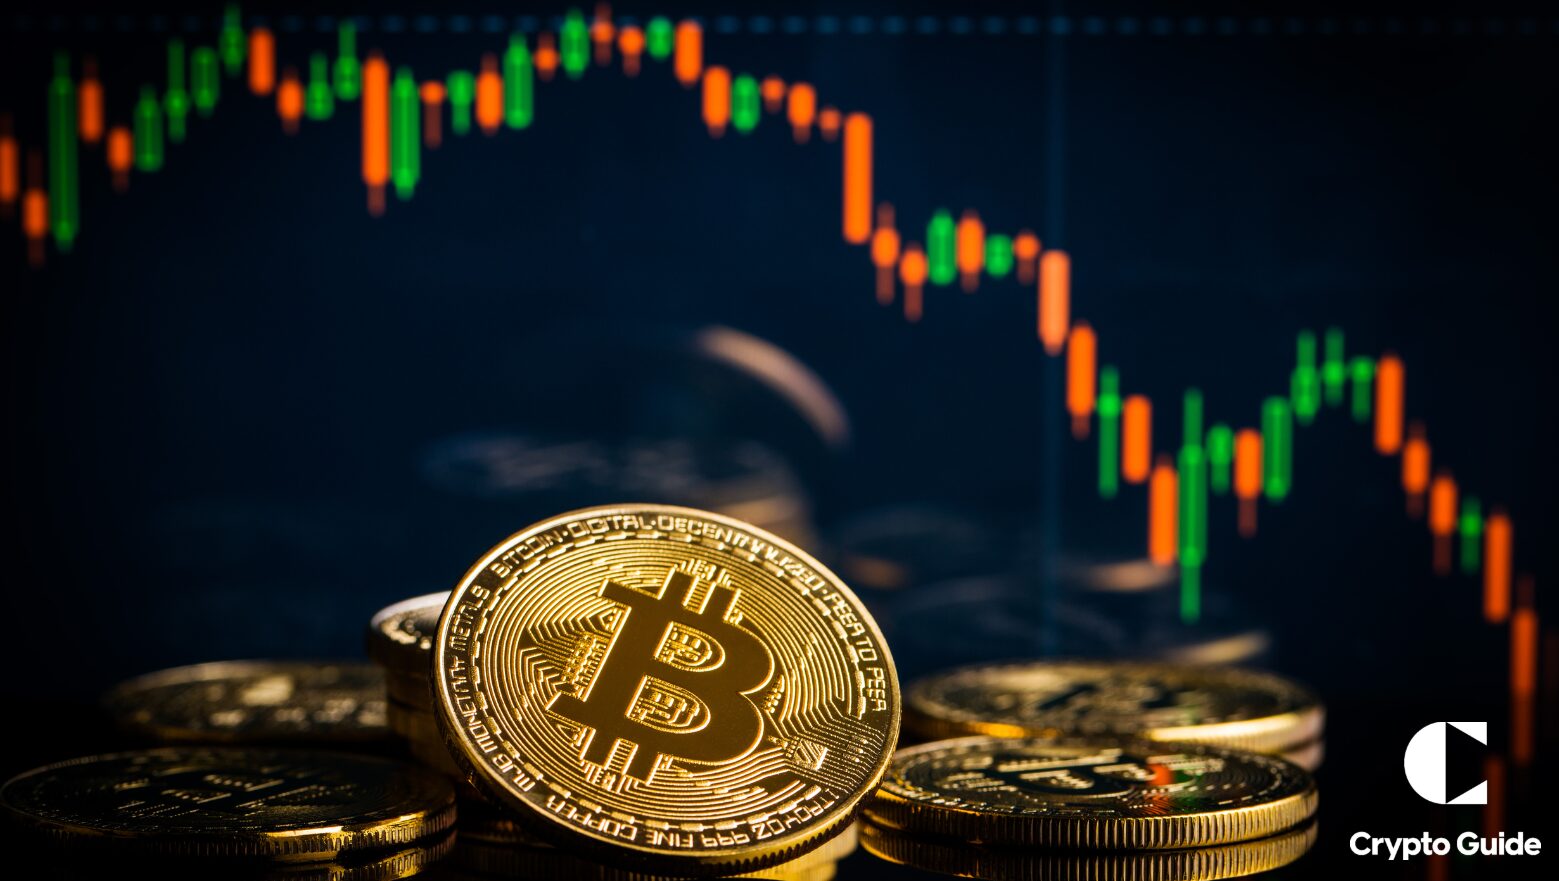 Cena bitcoinu klesá pod 62 500 USD uprostred turbulencií na trhu